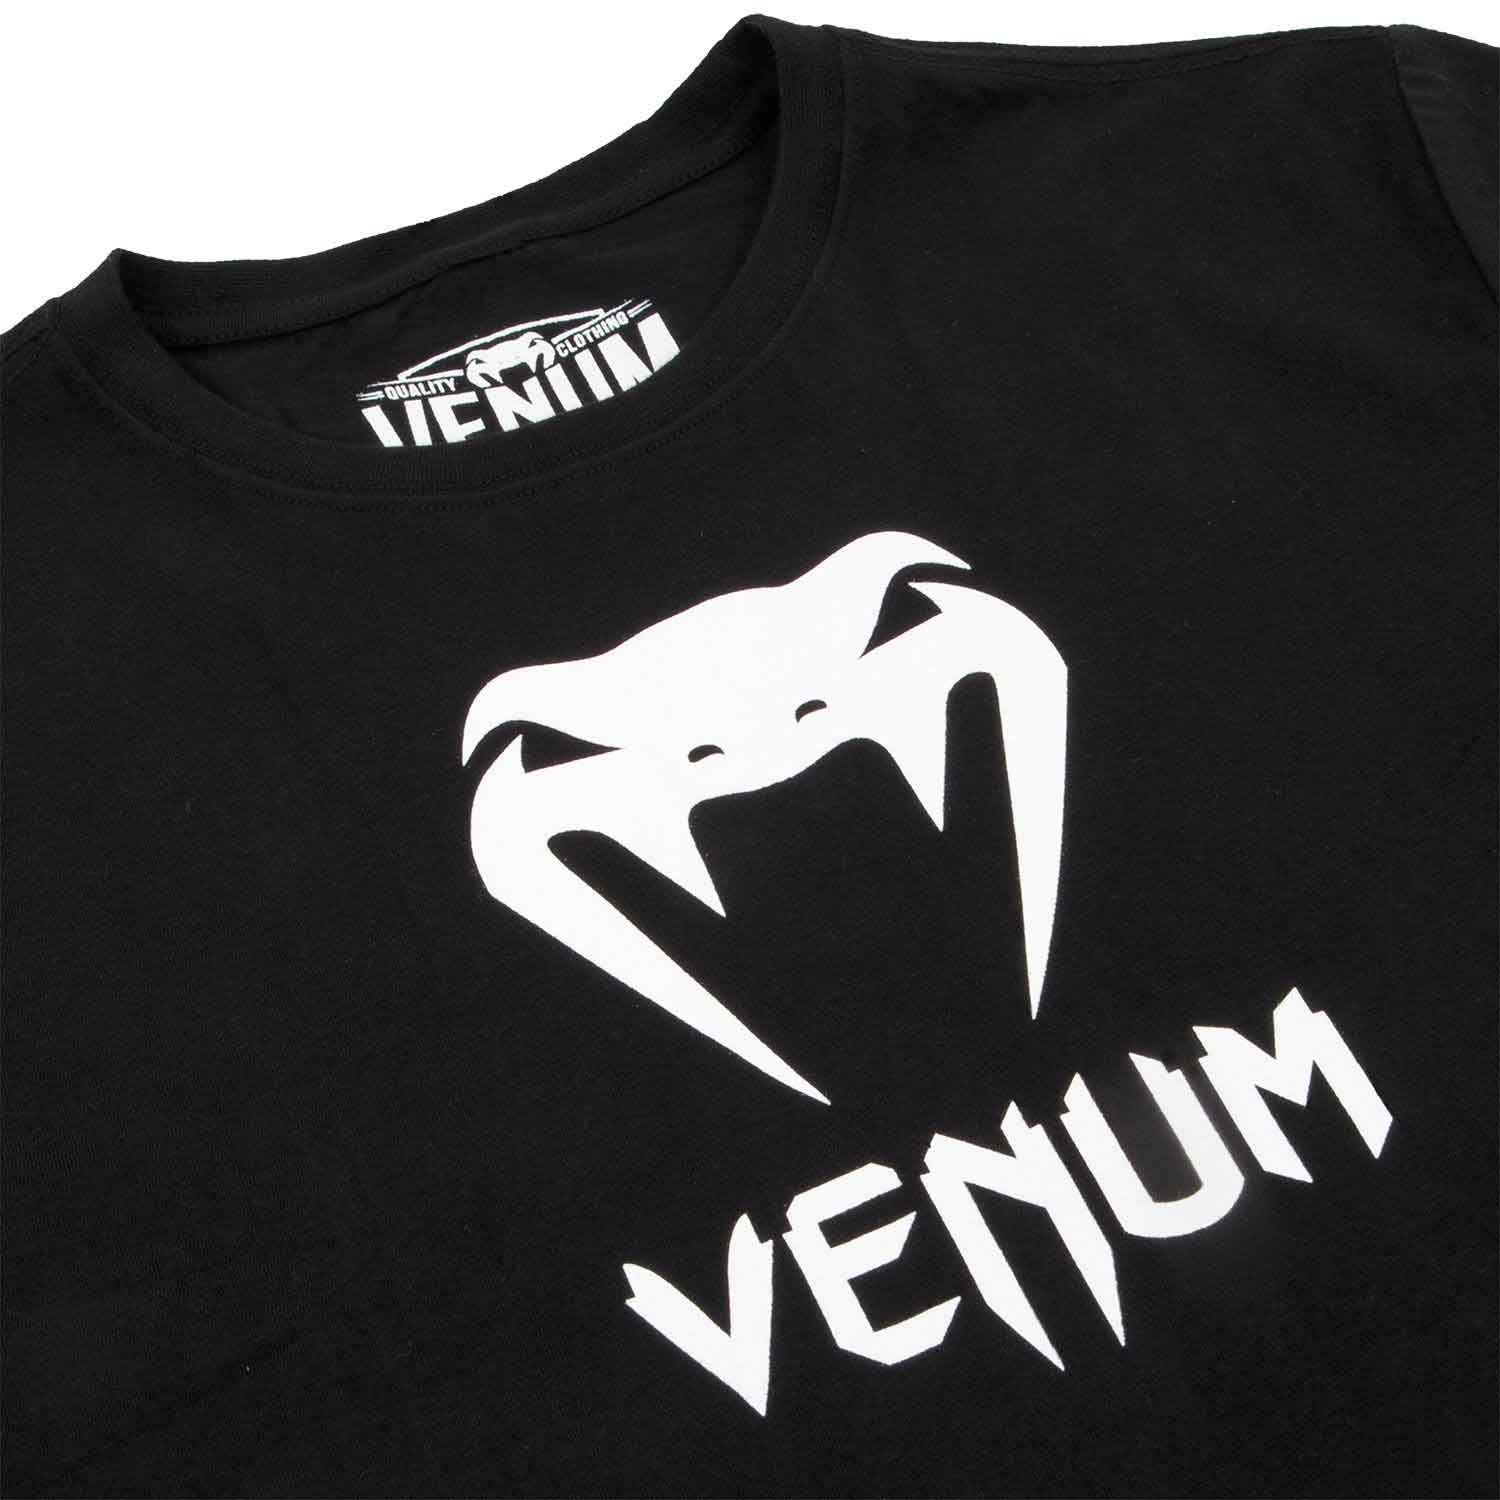 VENUM／ヴェナム　Tシャツ　　VENUM CLASSIC T-SHIRT／ヴェナム クラシック Tシャツ（黒／白）